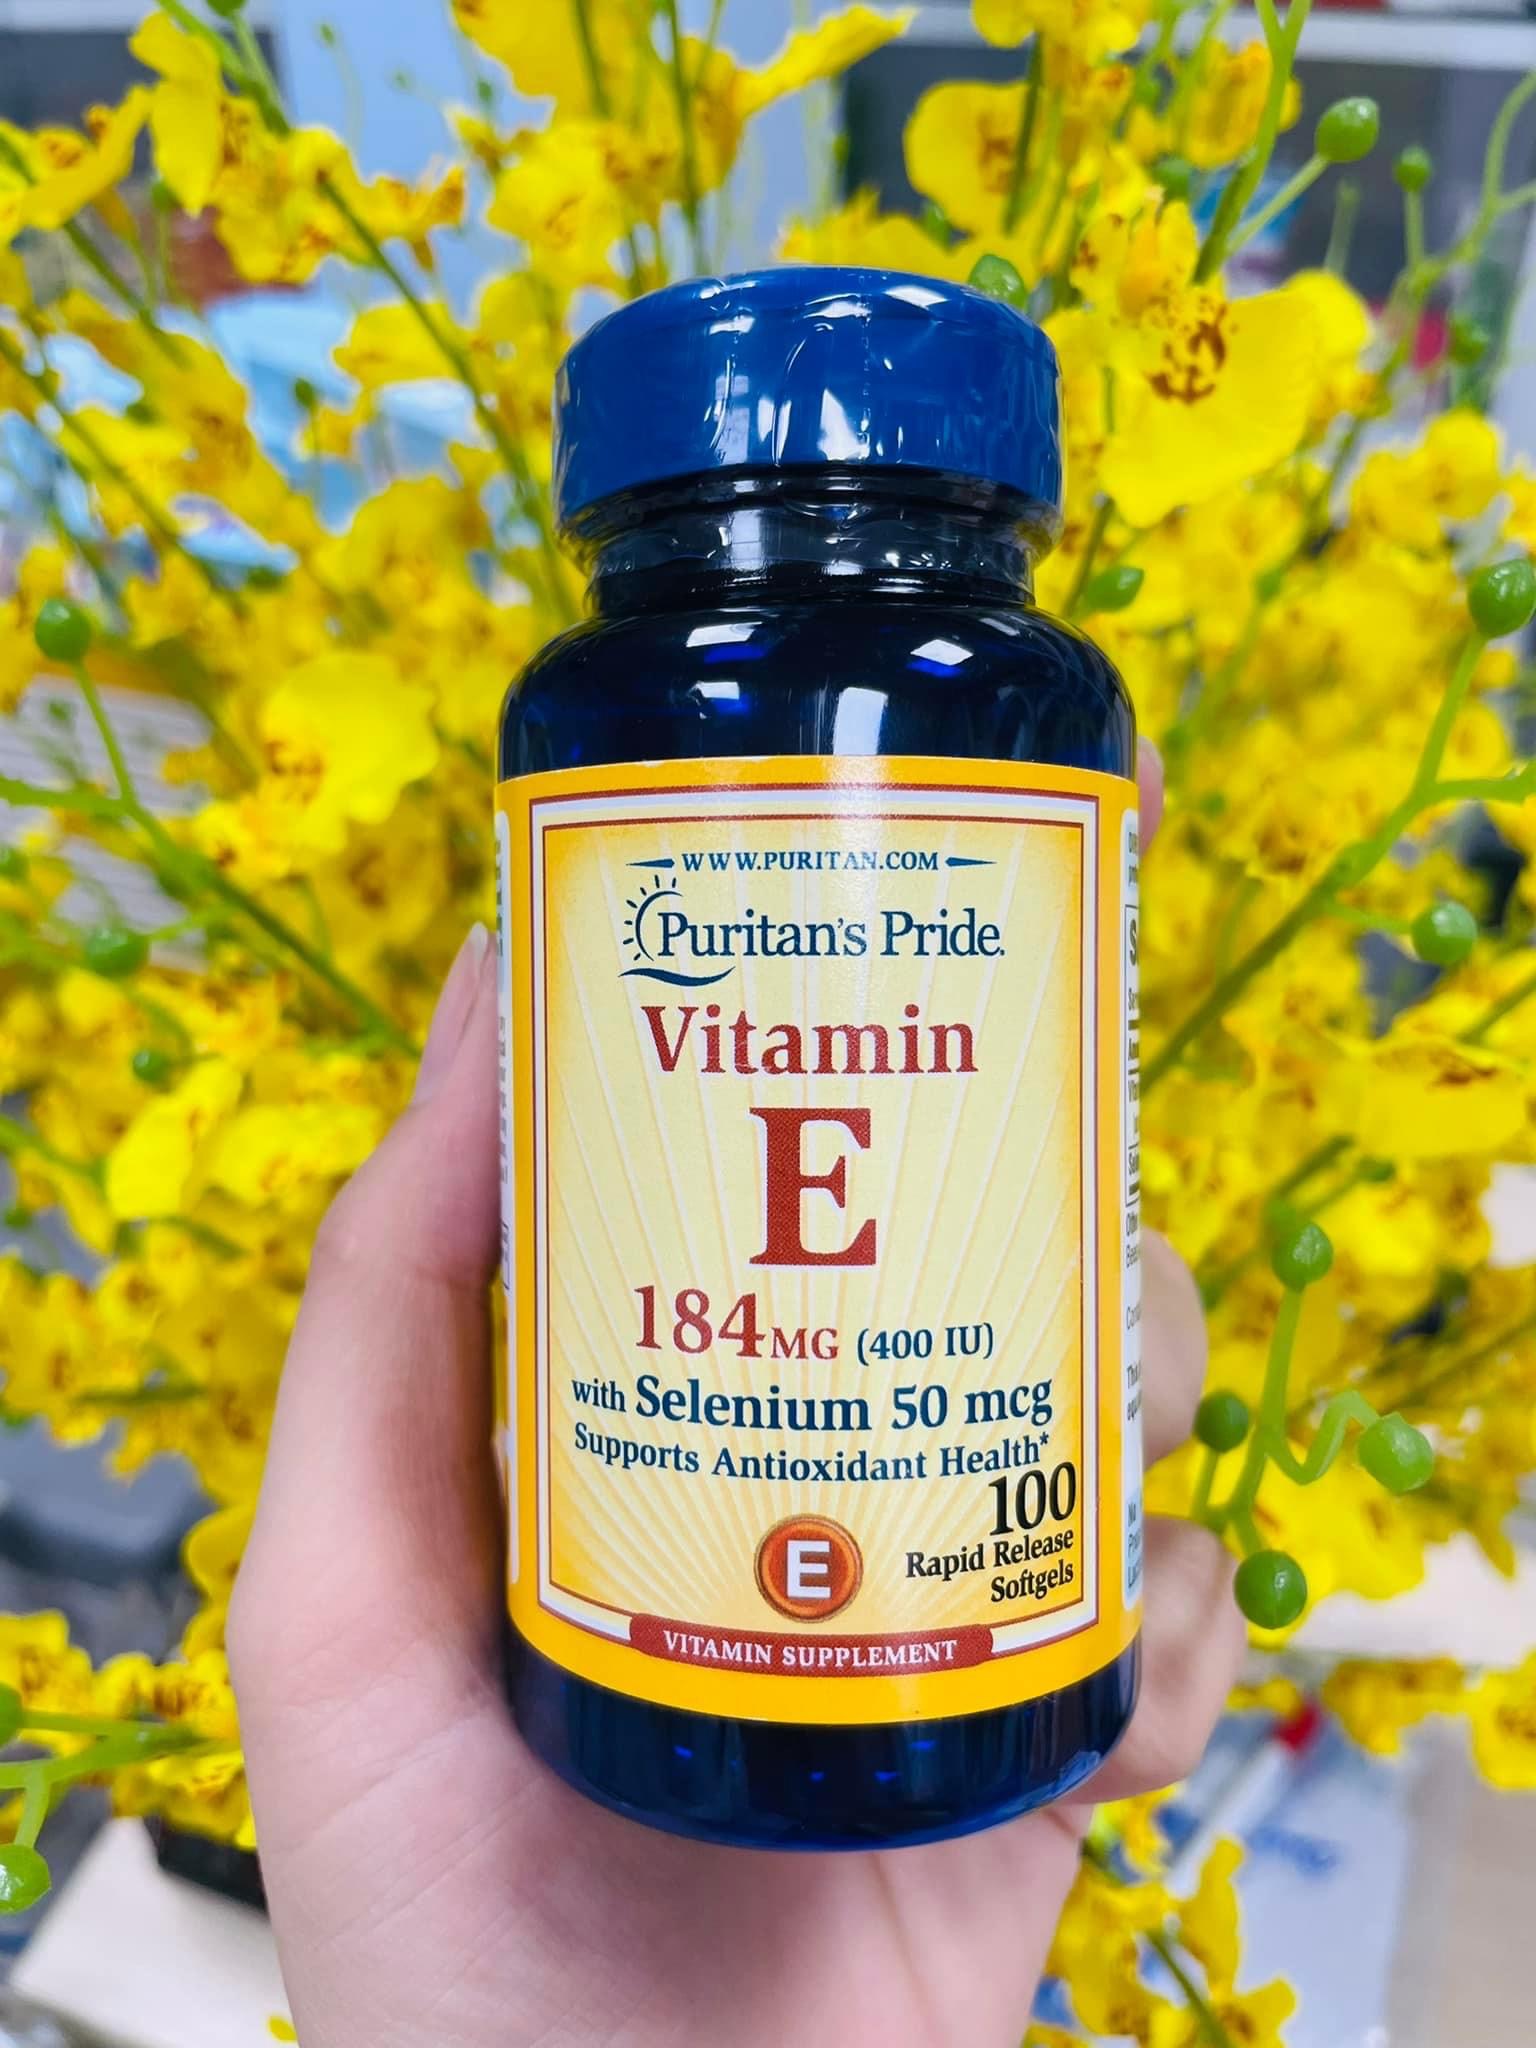 Vitamin E 184mg 400 IU with Selenium 50mcg